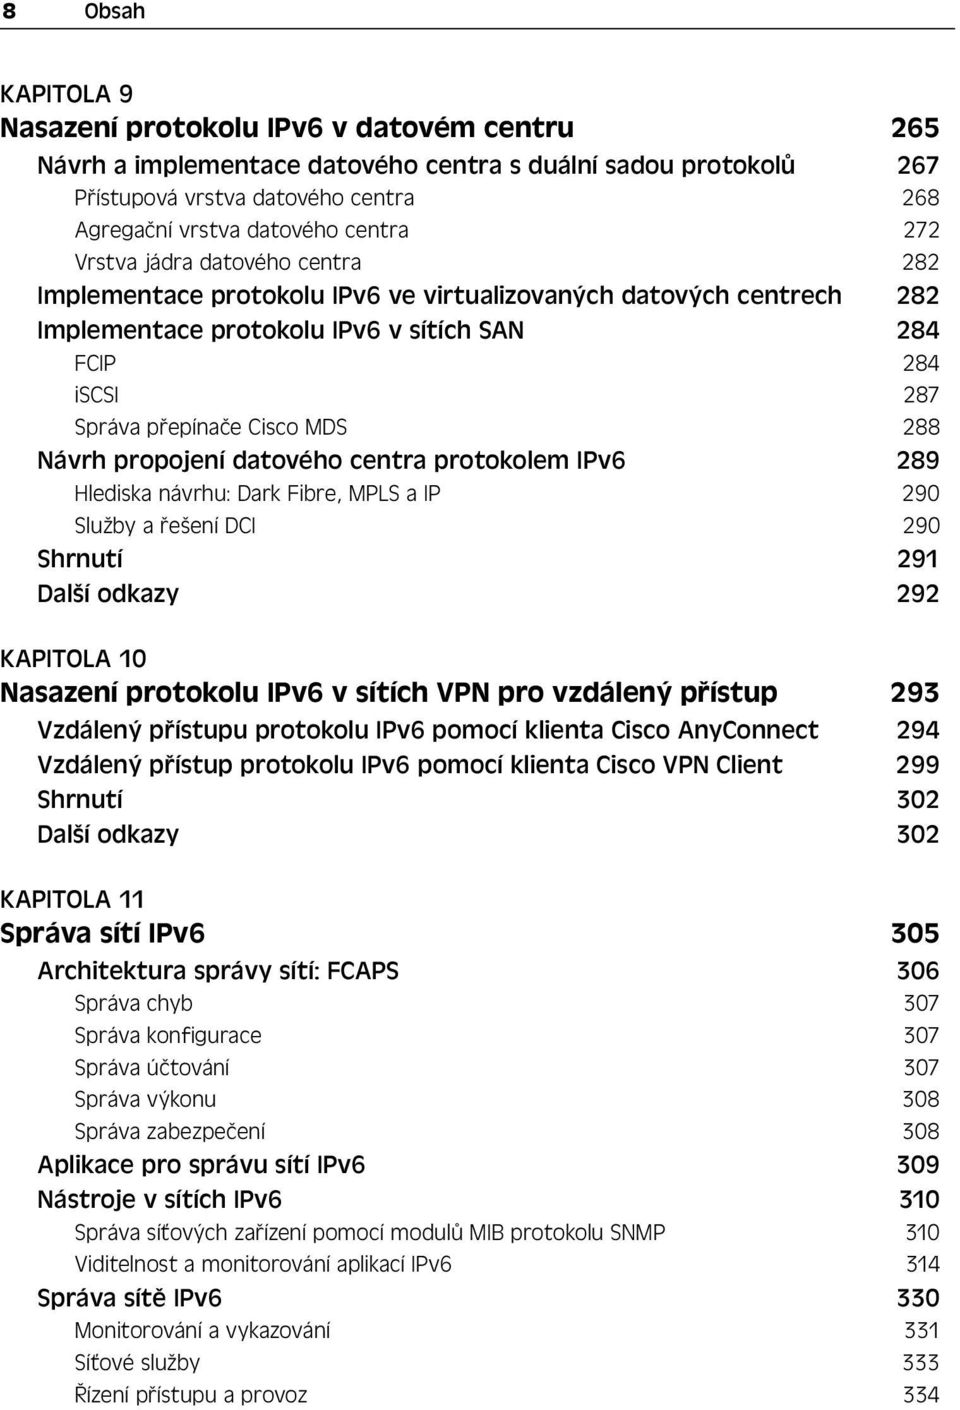 Cisco MDS 288 Návrh propojení datového centra protokolem IPv6 289 Hlediska návrhu: Dark Fibre, MPLS a IP 290 Služby a řešení DCI 290 Shrnutí 291 Další odkazy 292 KAPITOLA 10 Nasazení protokolu IPv6 v